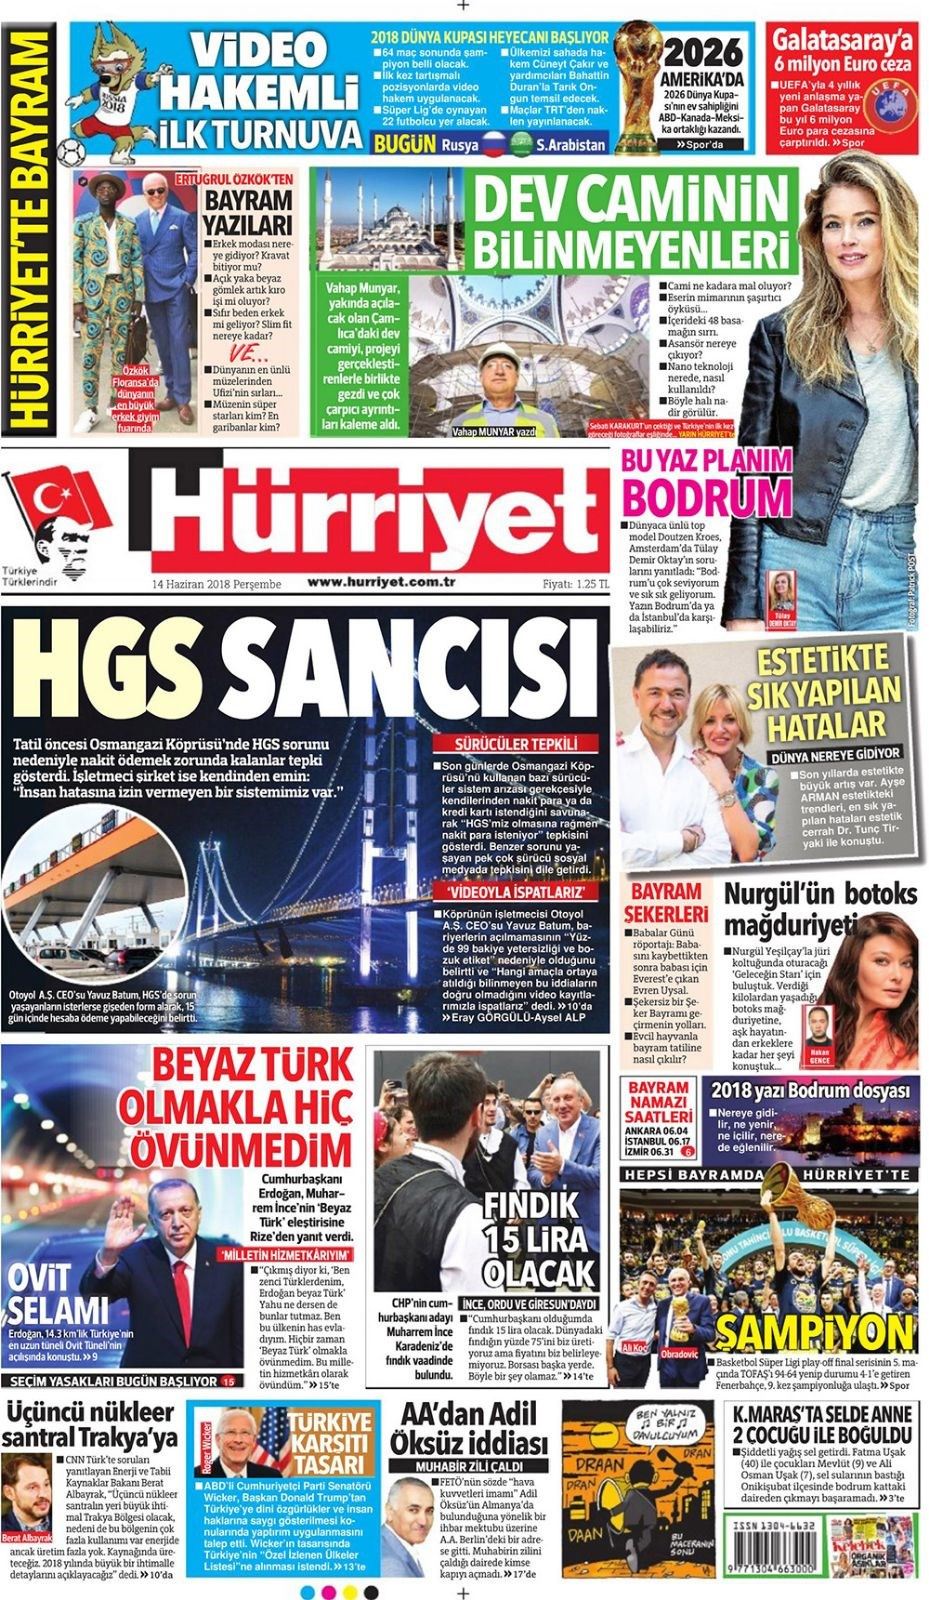 Gazete manşetleri 14 Haziran 2018 Hürriyet - Sözcü - Habertürk